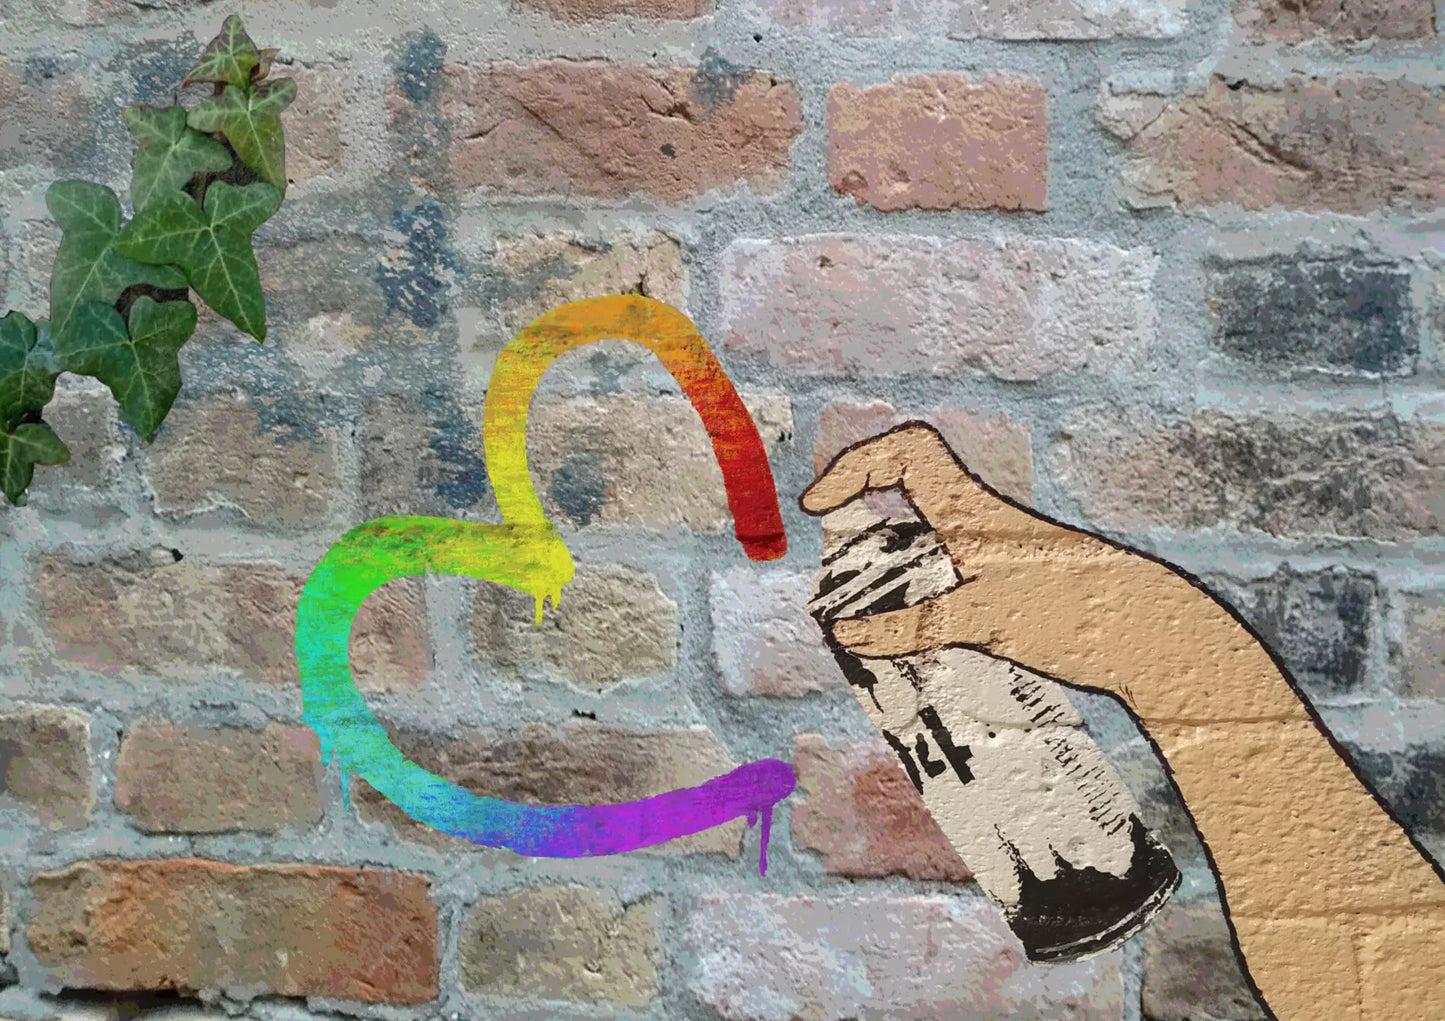 Spread Love Rainbow di Shife. Stampa giclée stampa giclée su carta 320 gsm edizione limitata rappresentante una bomboletta spray che disegna un cuore | Cd Studio d'Arte